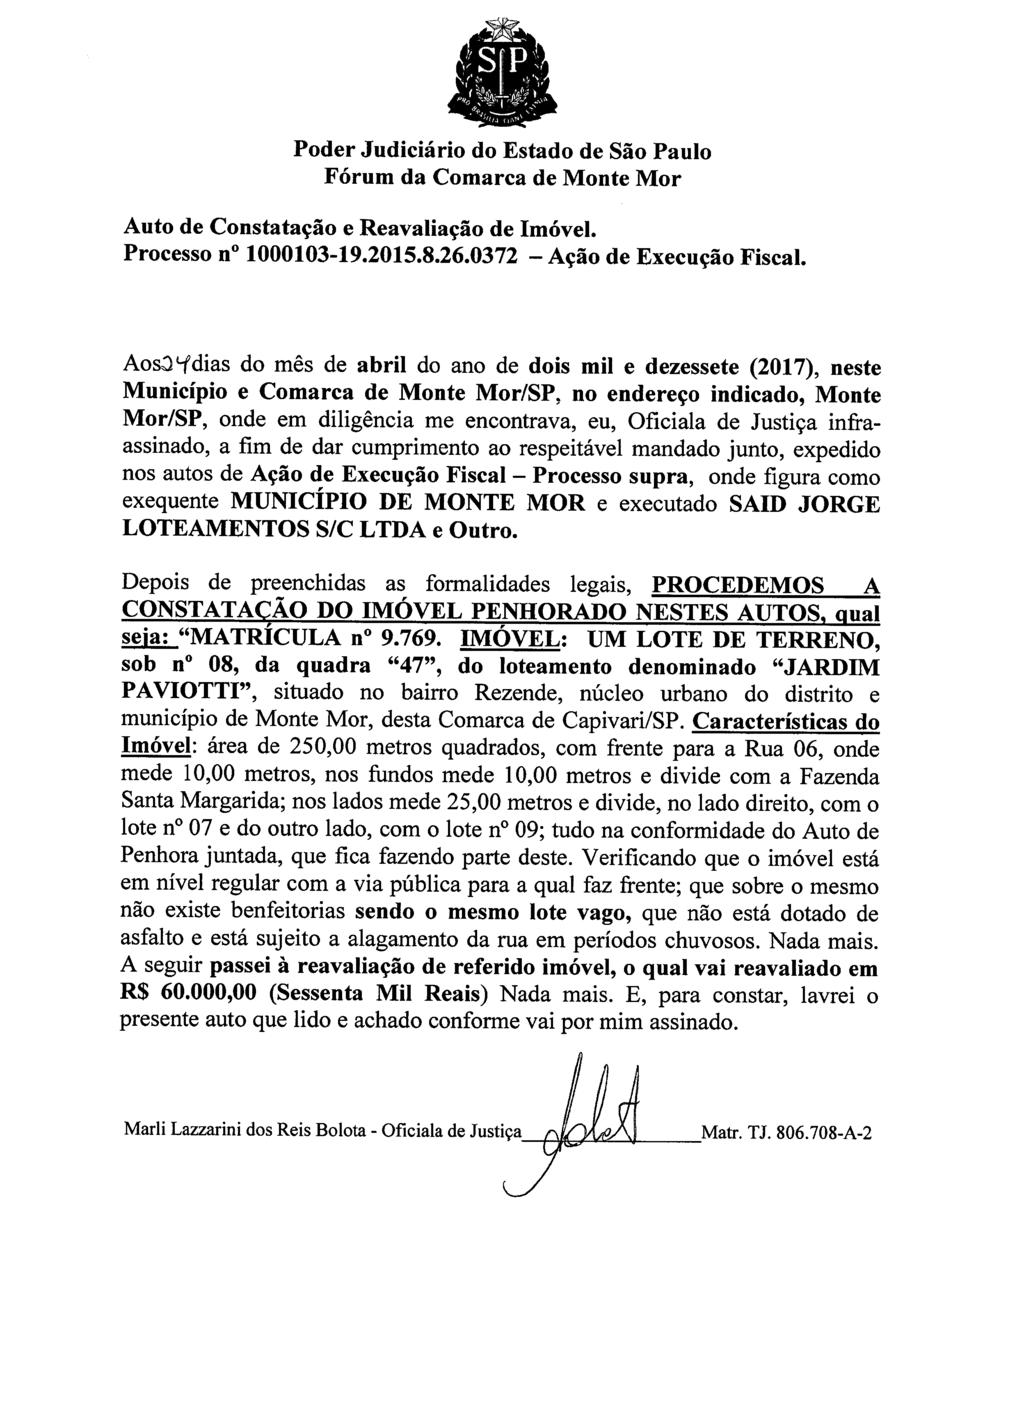 fls. 53 Este documento é cópia do original, assinado digitalmente por HUMBERTO PUGIN JUNIOR, liberado nos autos em 02/05/2017 às 12:03.